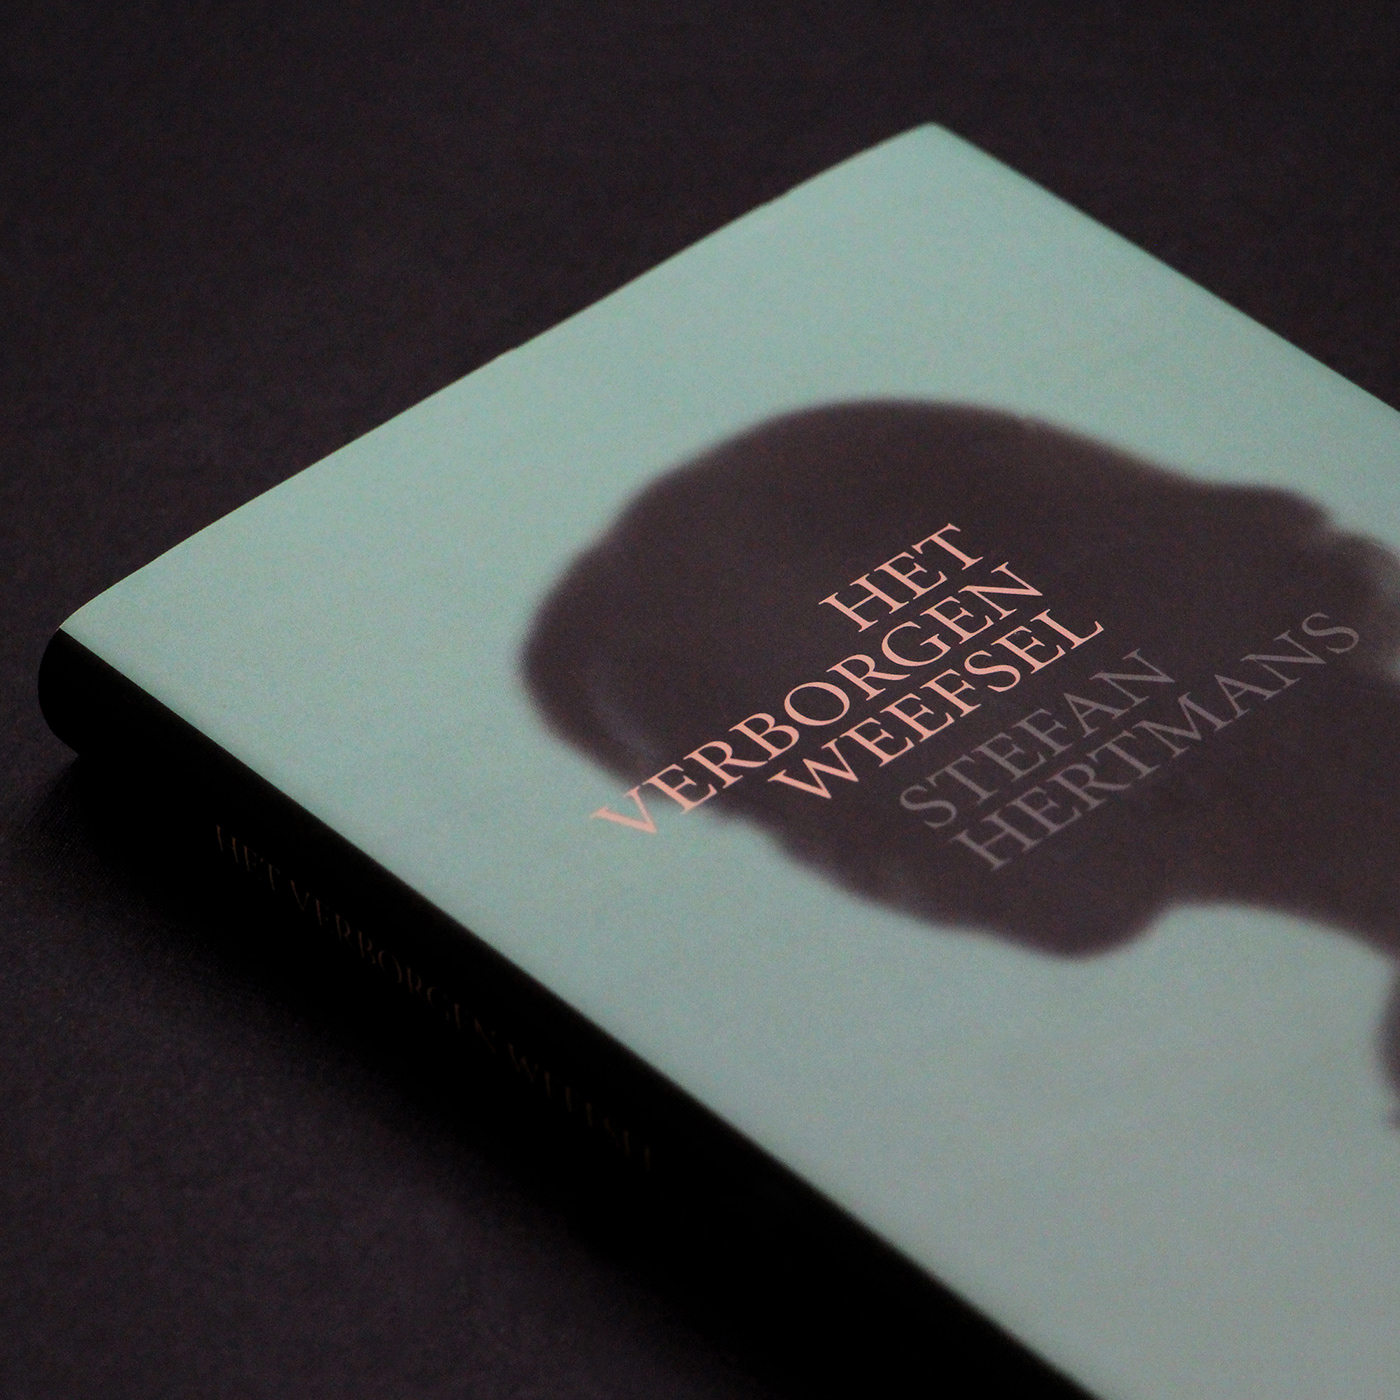 book design cover design de bezige bij novel Stefan Hertmans